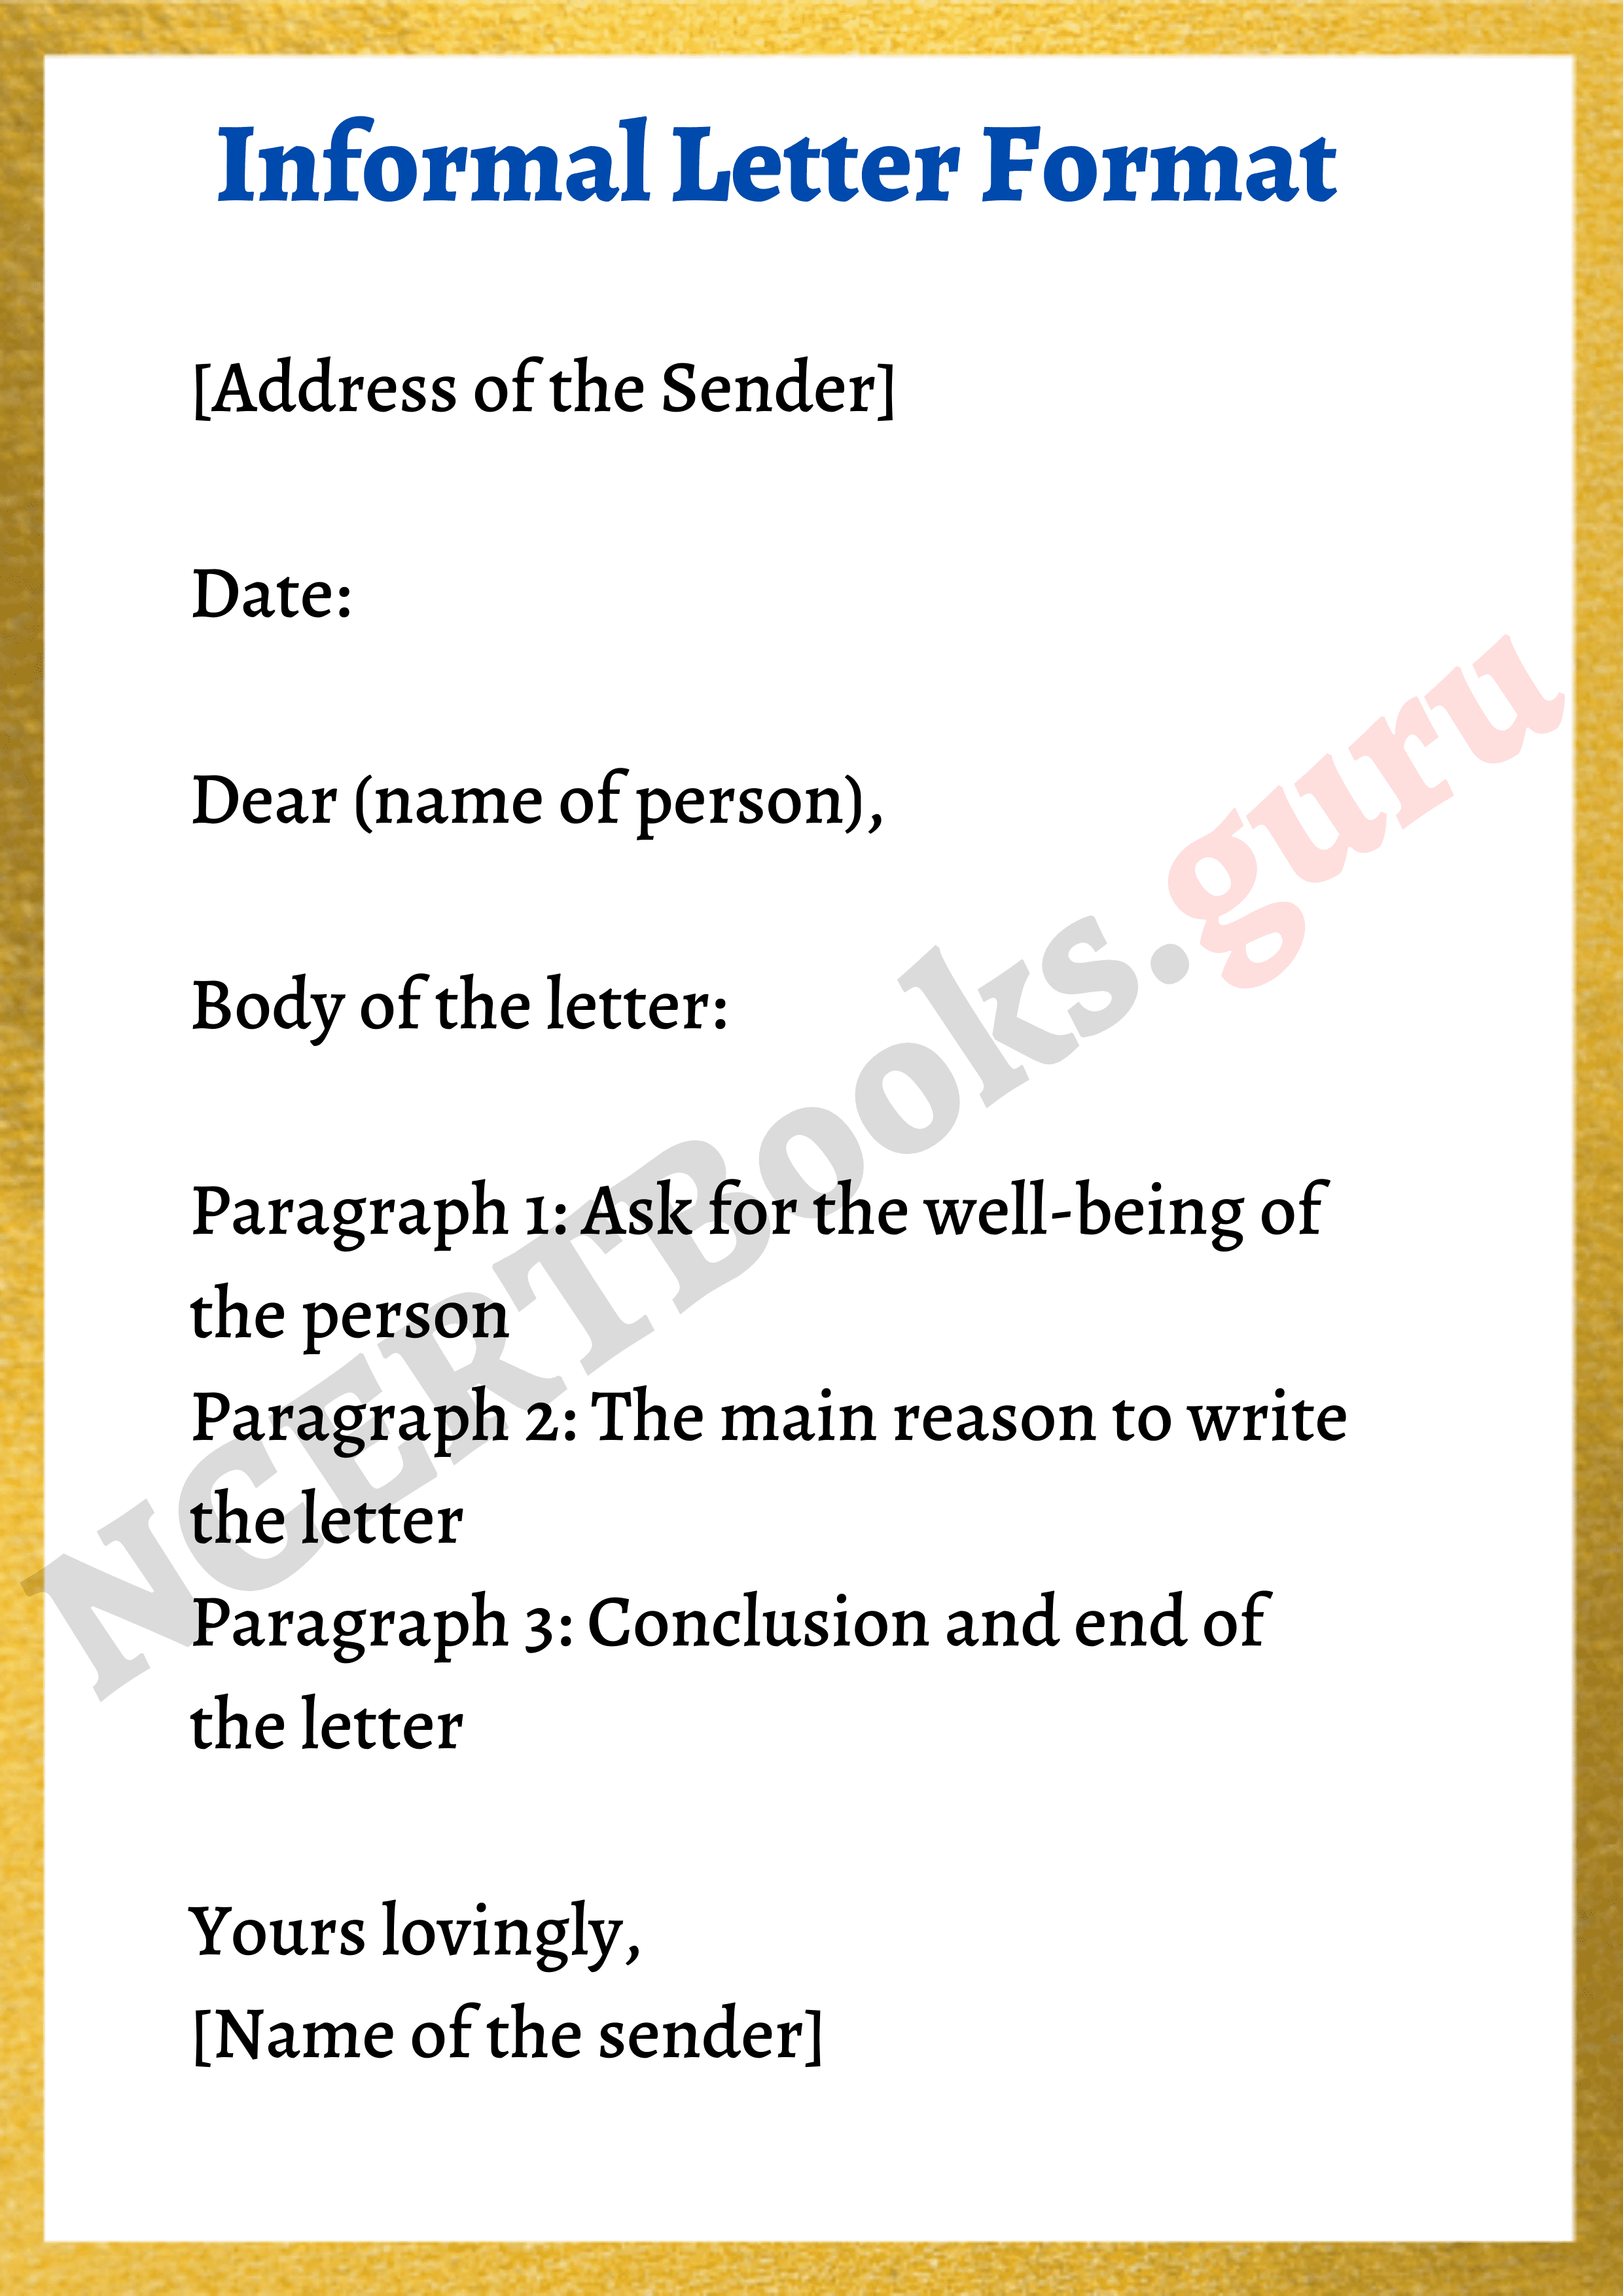 body of informal letter